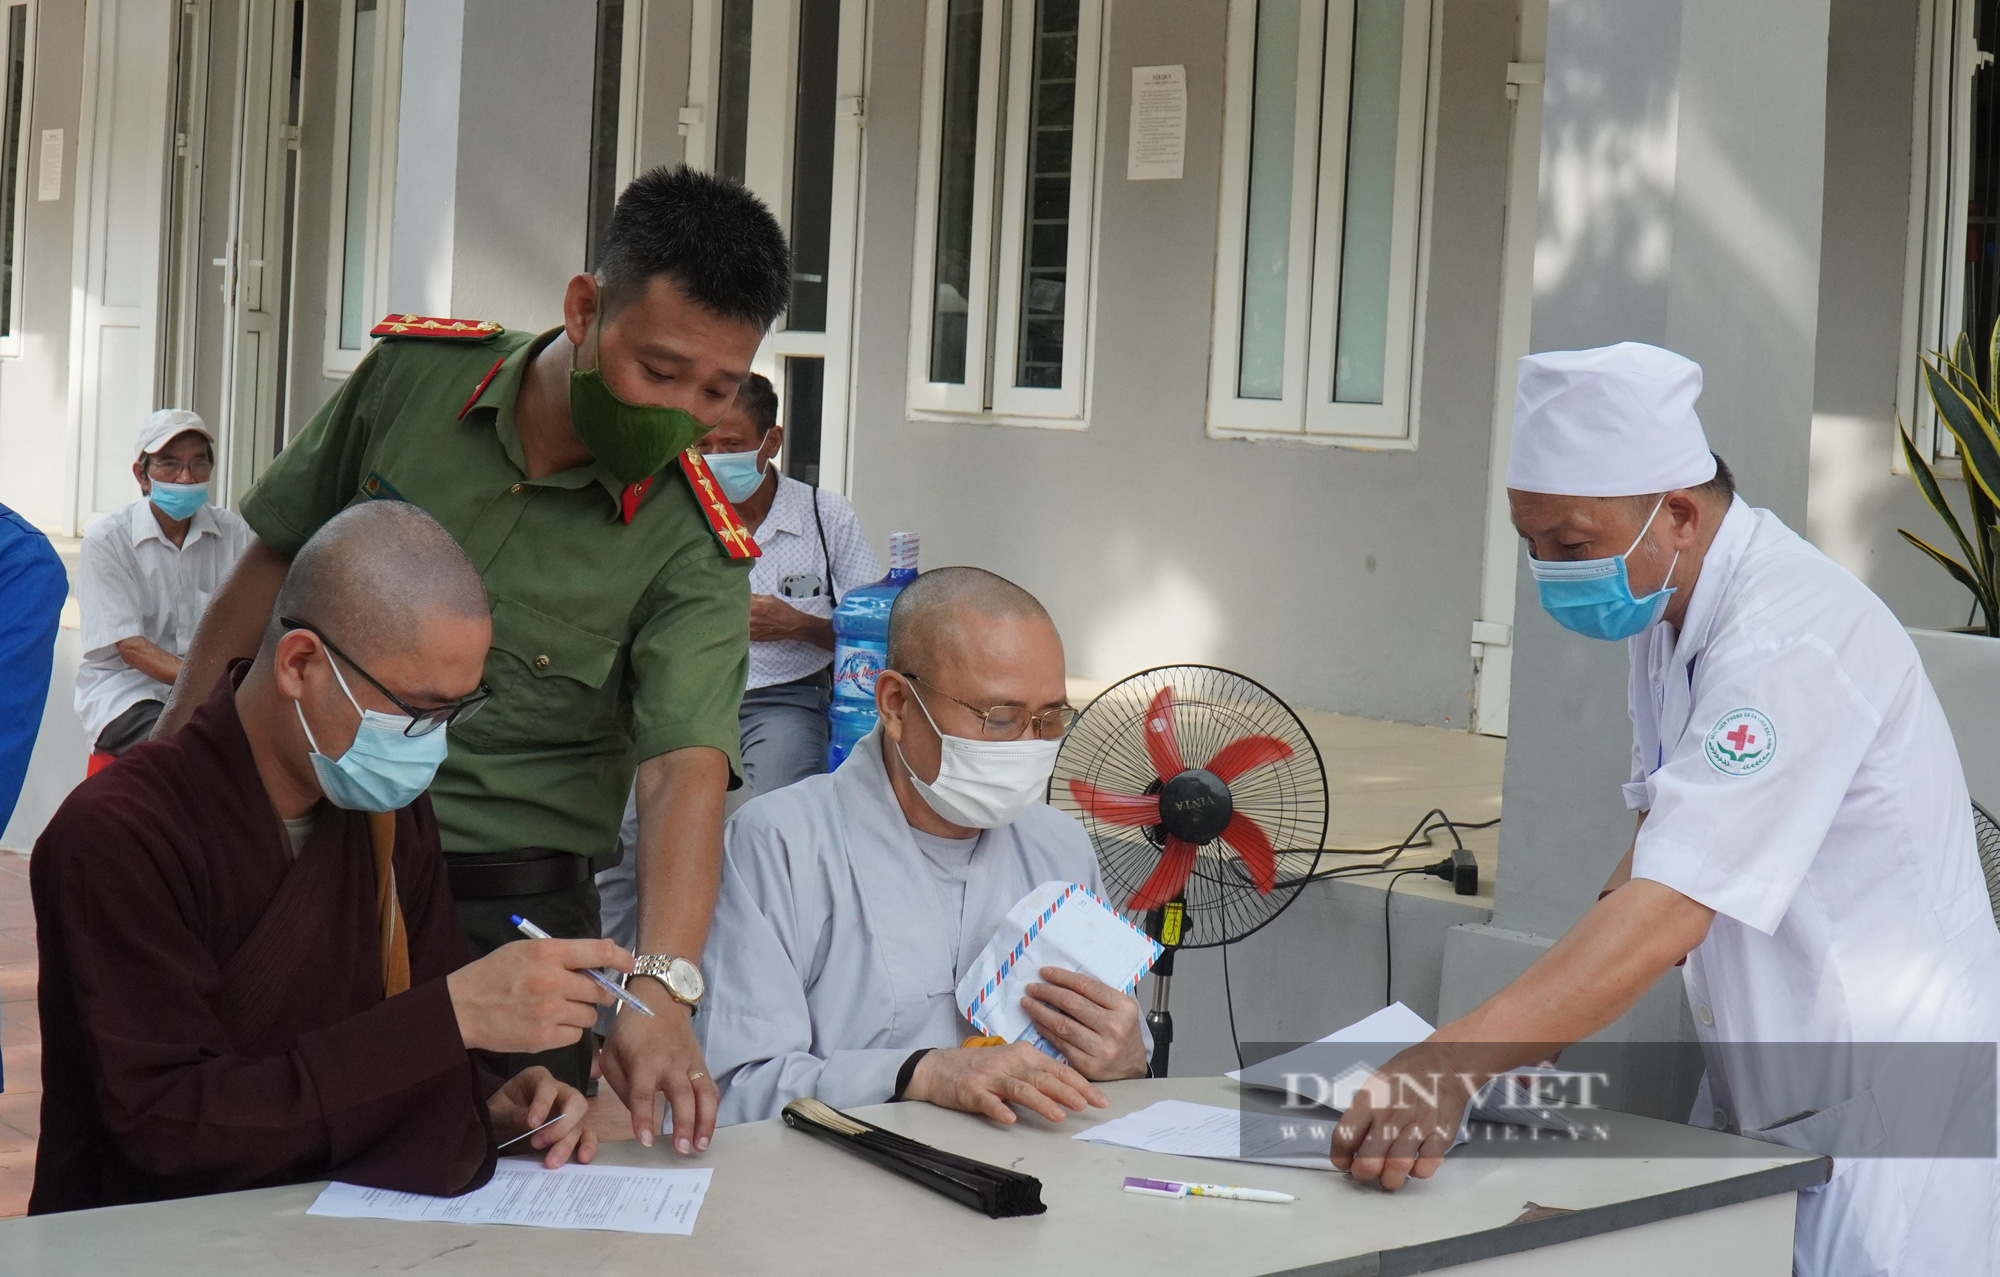 Bắc Ninh: Tiêm vắc xin phòng Covid-19 cho 130 chức sắc tôn giáo - Ảnh 1.